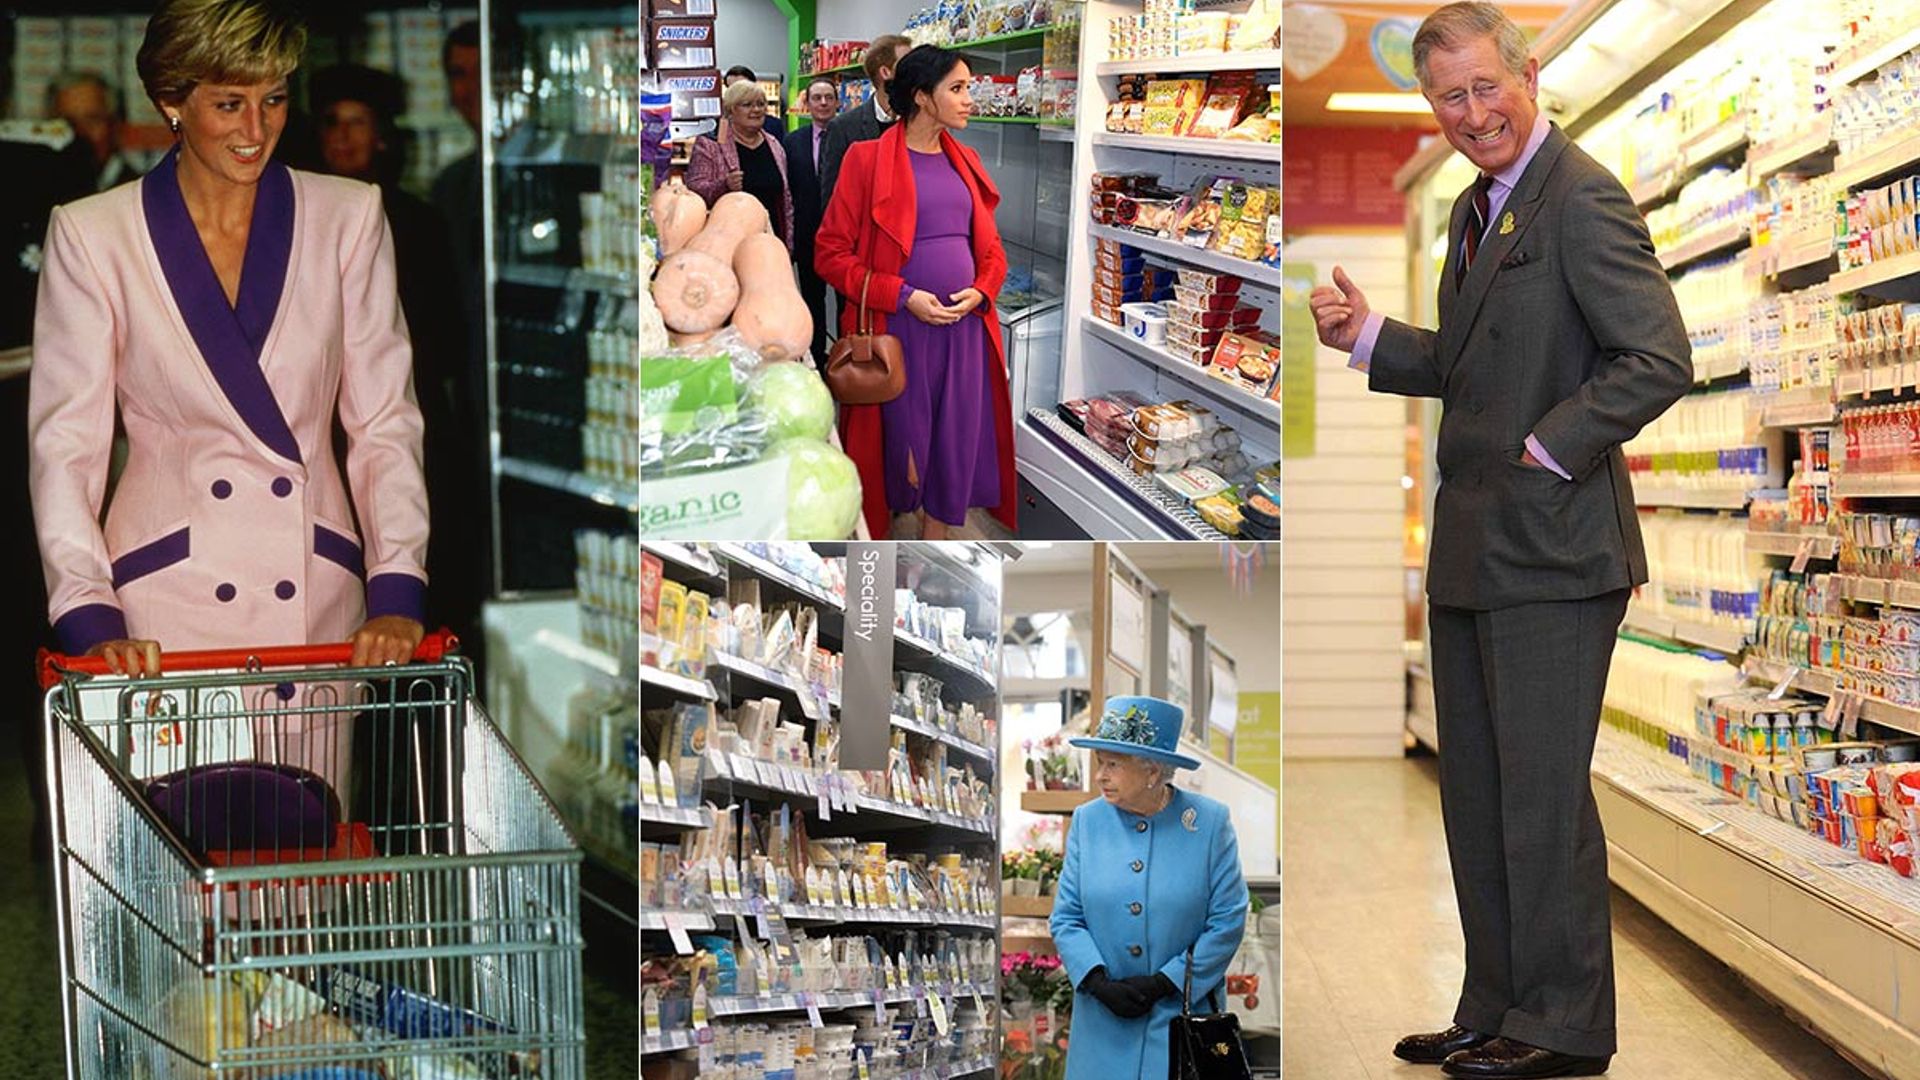 Royals at supermarkets